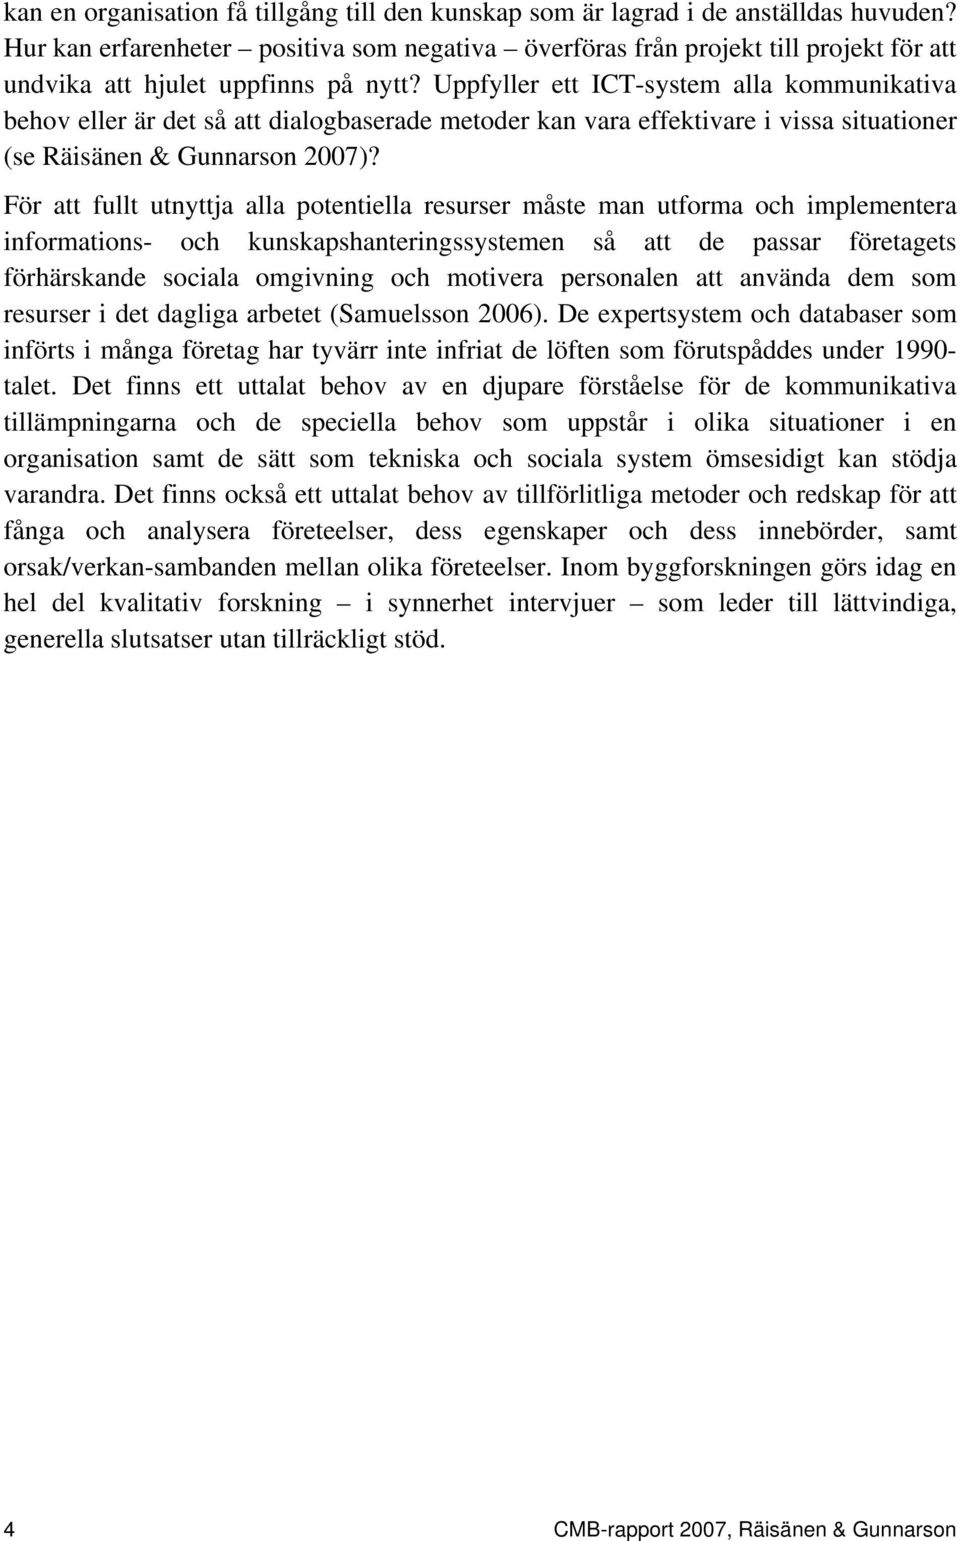 Uppfyller ett ICT-system alla kommunikativa behov eller är det så att dialogbaserade metoder kan vara effektivare i vissa situationer (se Räisänen & Gunnarson 2007)?